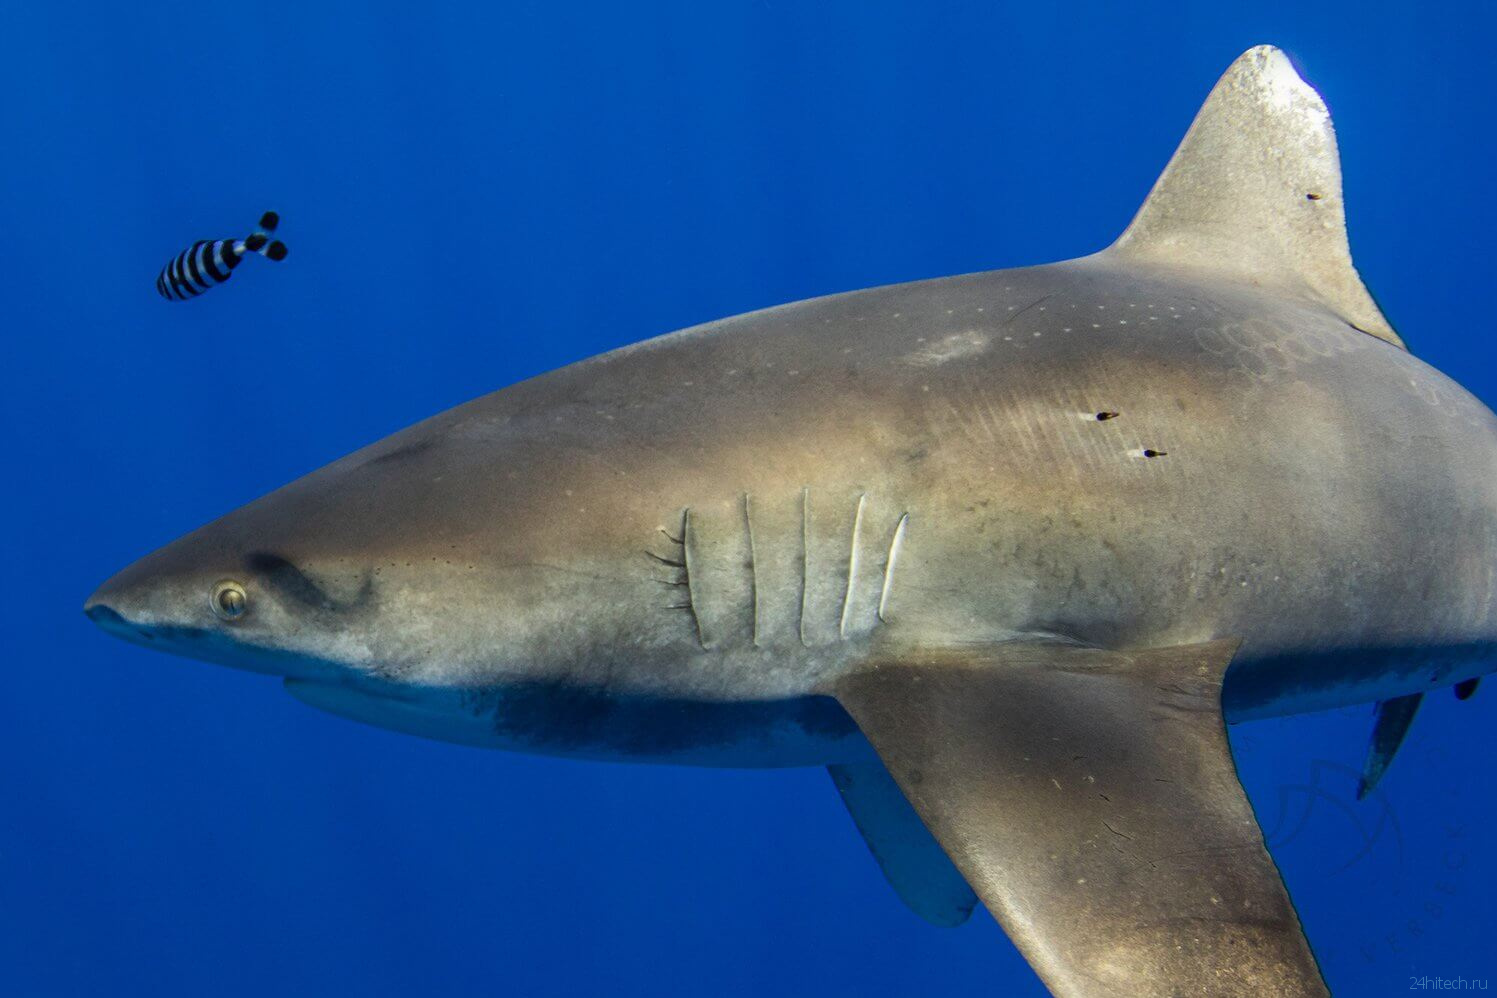 Каких животных боятся опасные акулы?